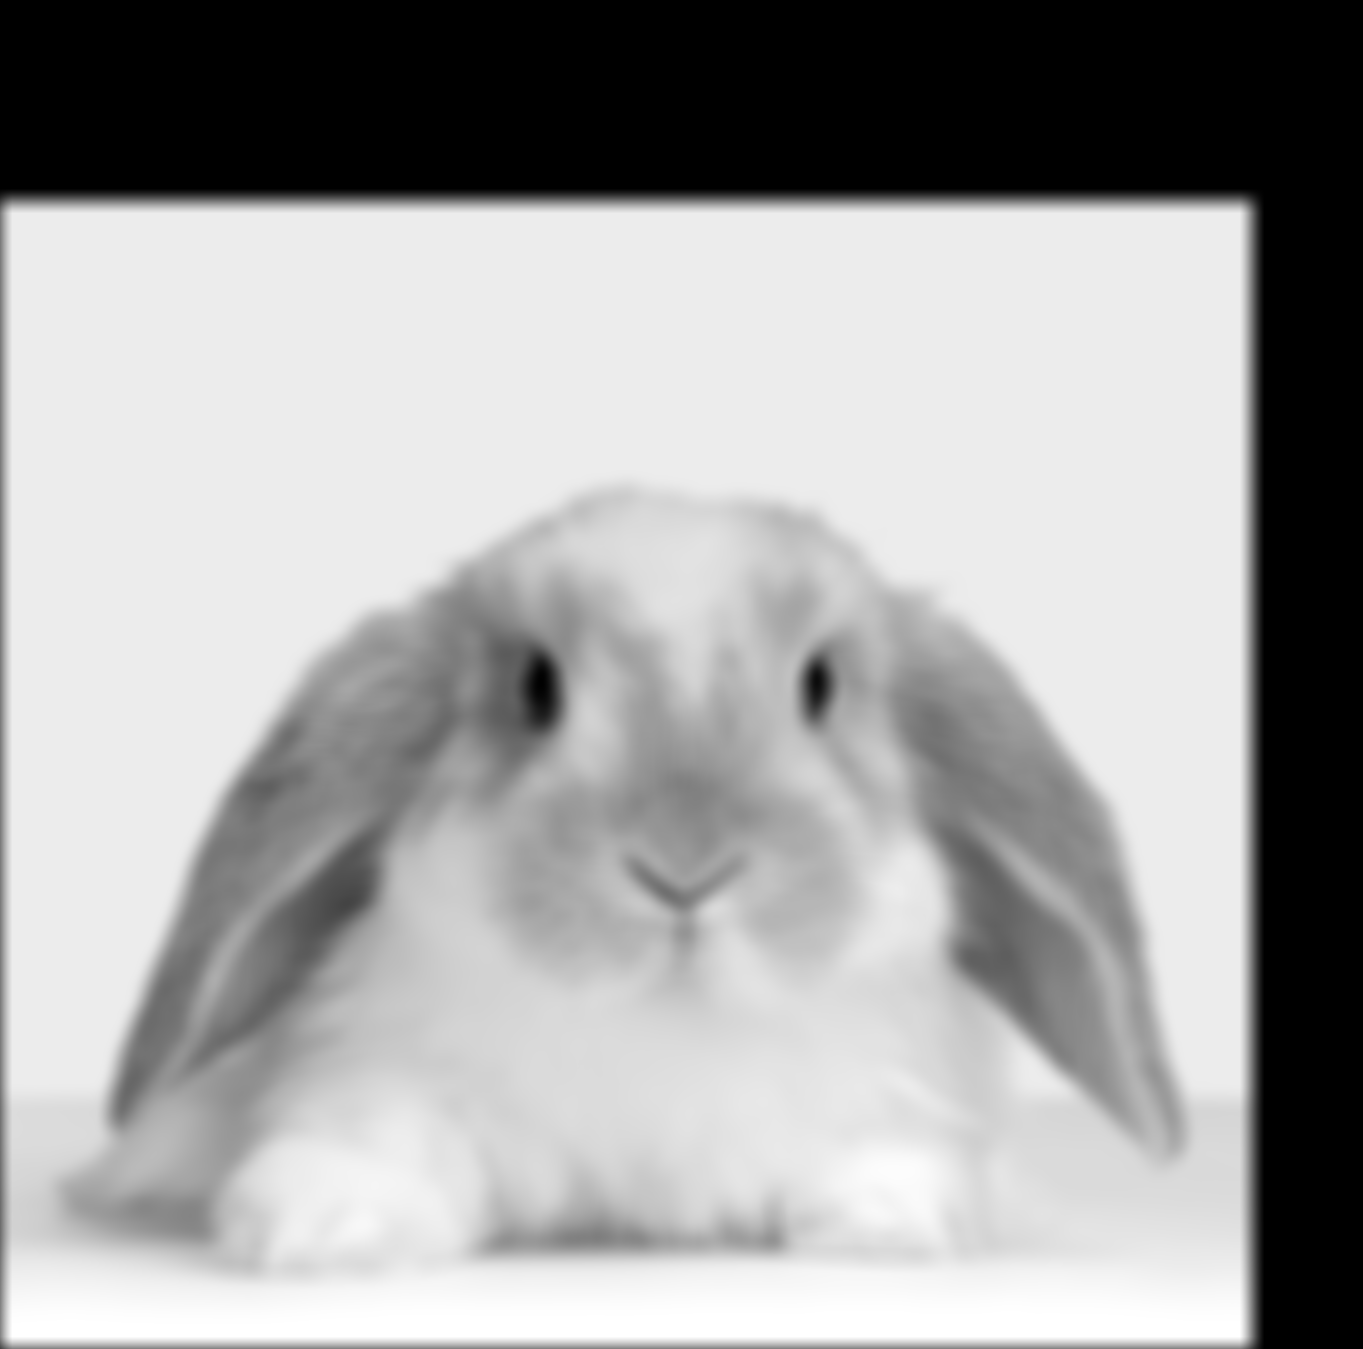 Low-Pass Filter Bunny